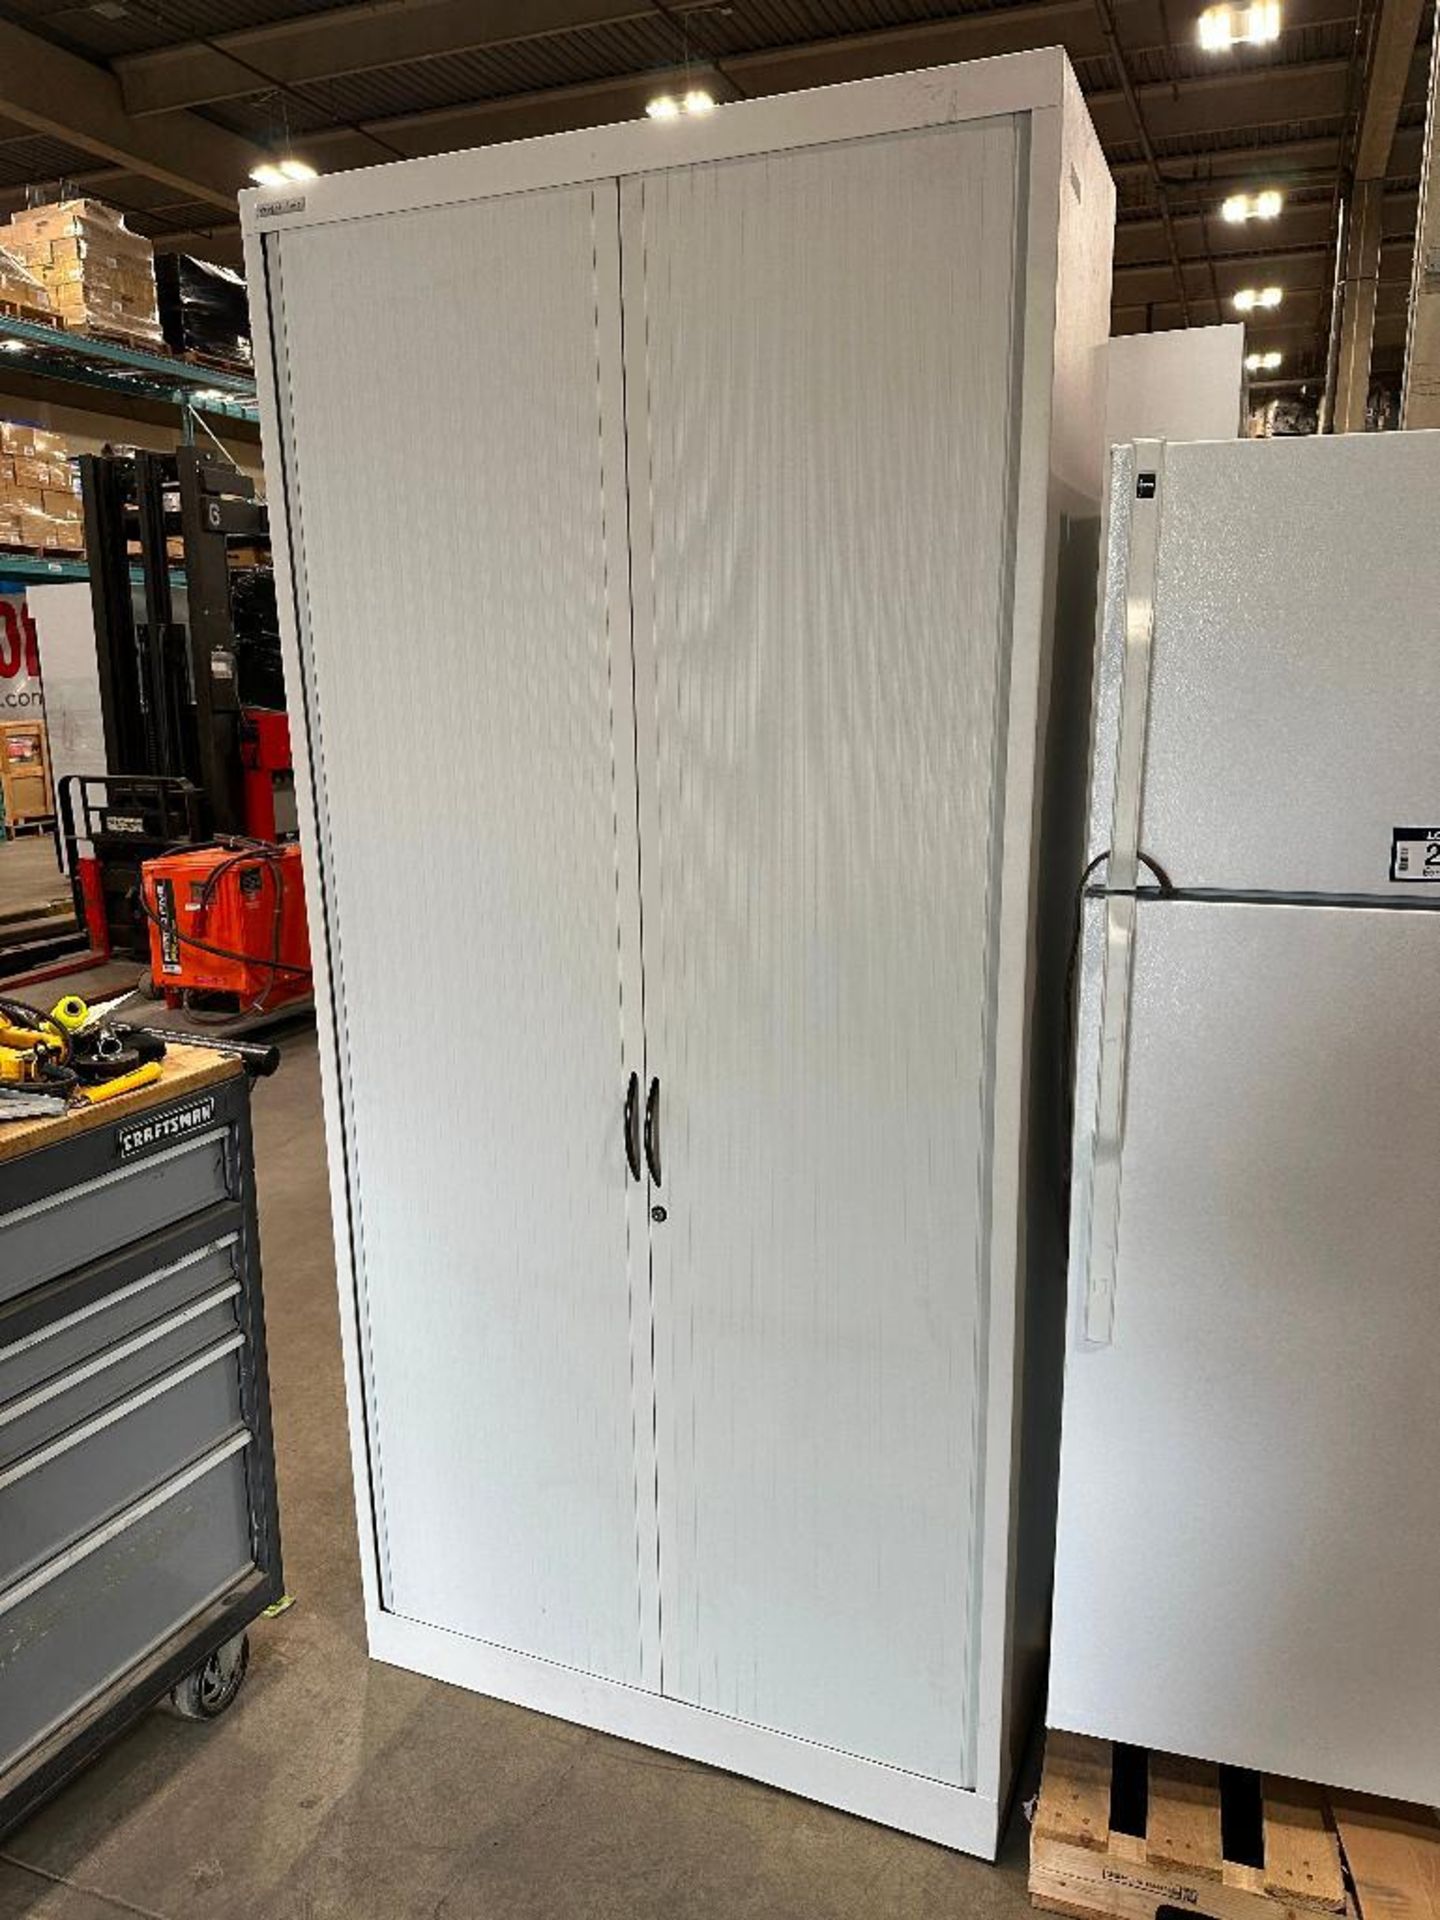 39” X 18-1/2” X 83” Sliding-Door Shop Cabinet - Image 3 of 3